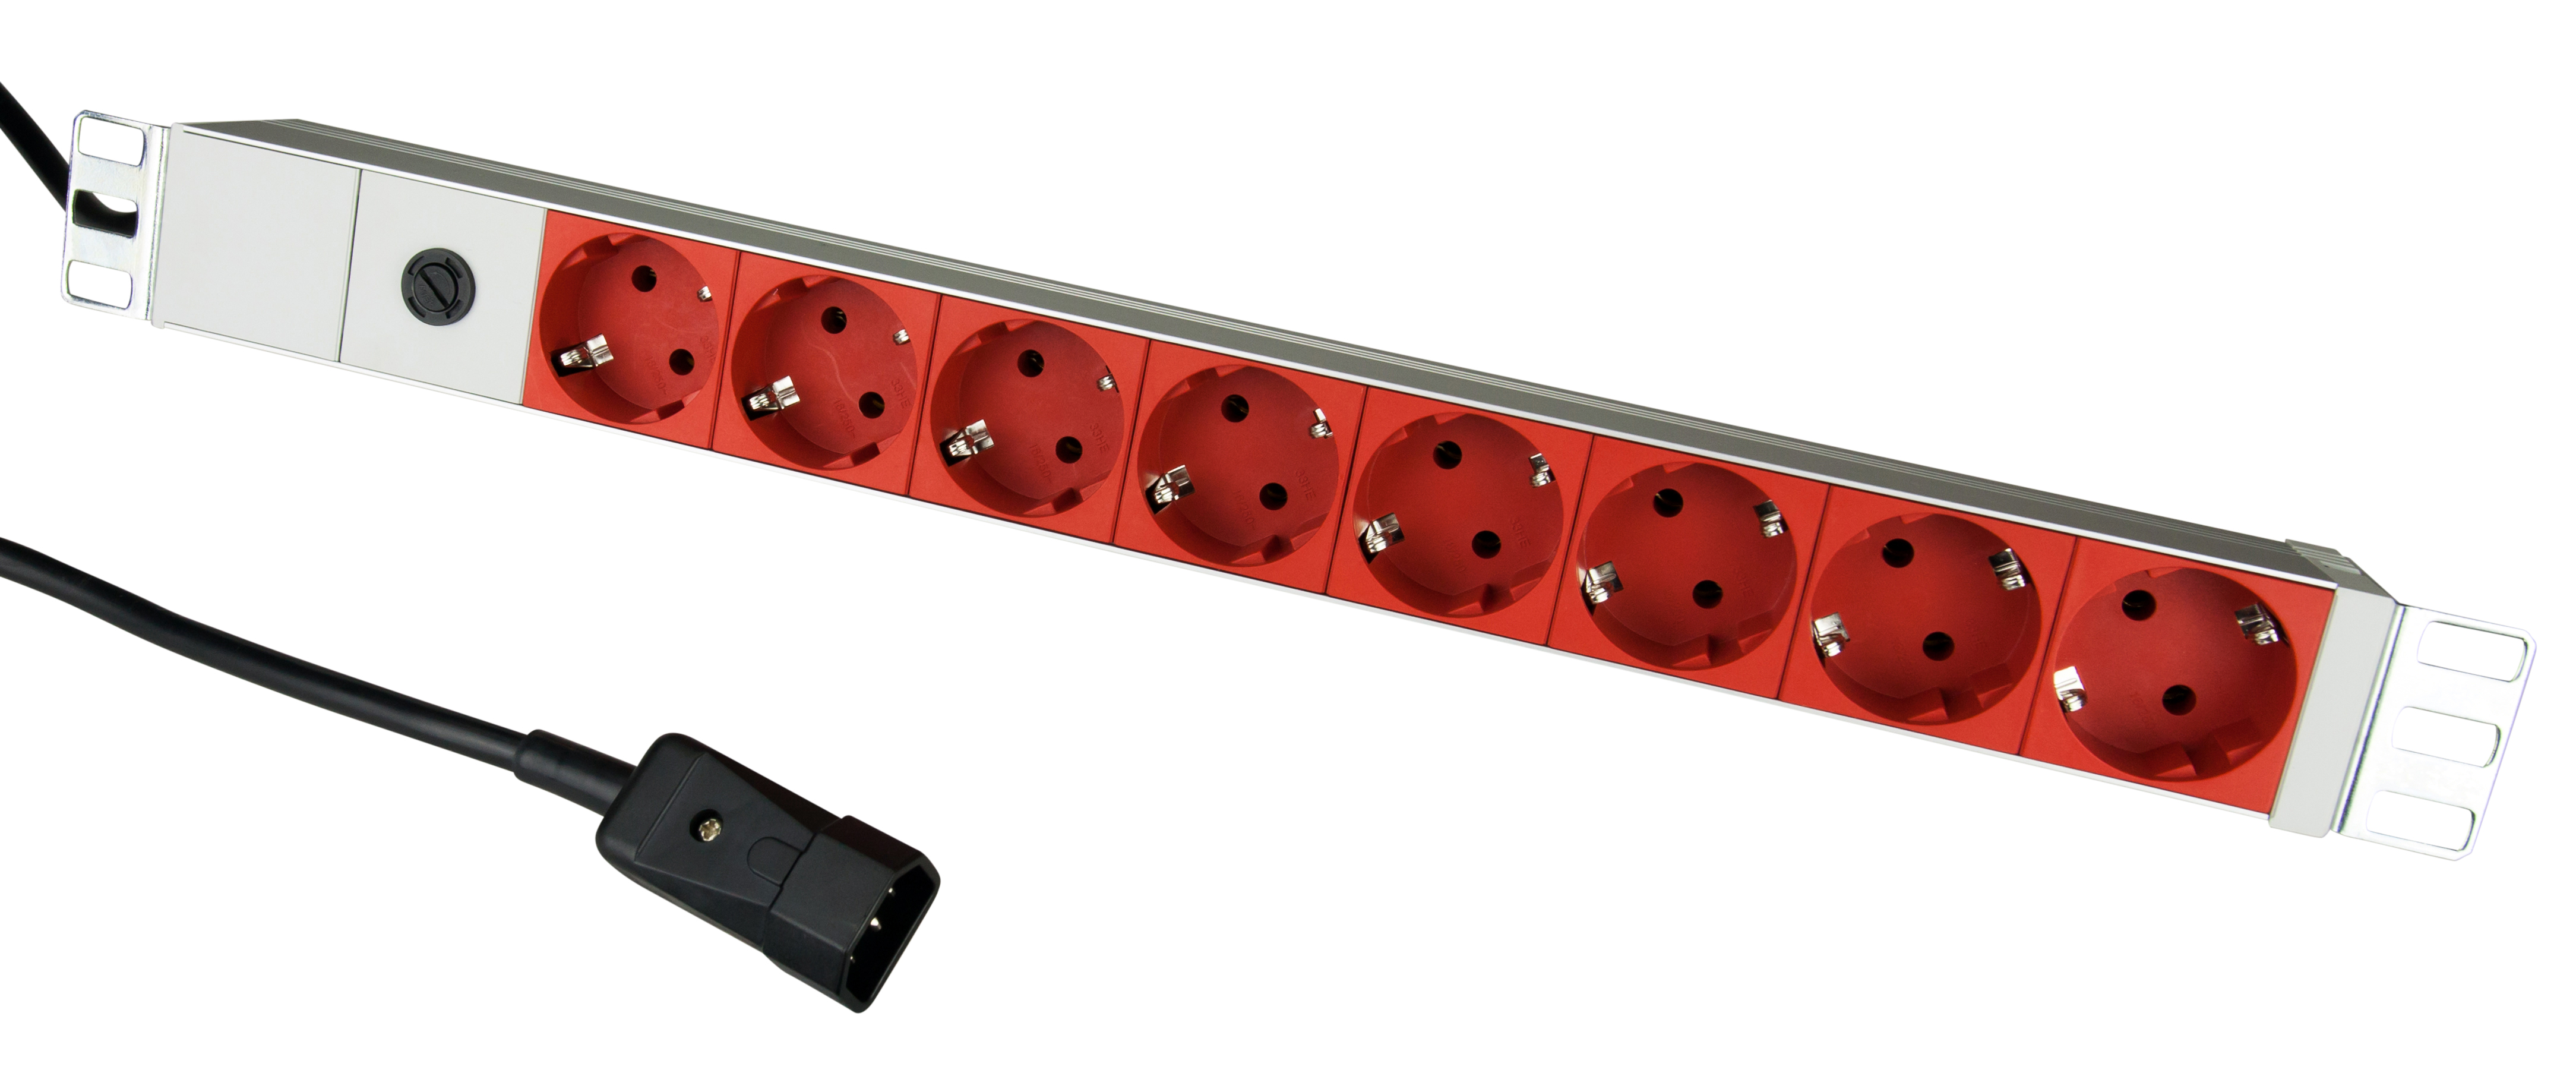 19" Netzleiste für USV, 8xSchuko Rot, 2m-Kabel mit C14